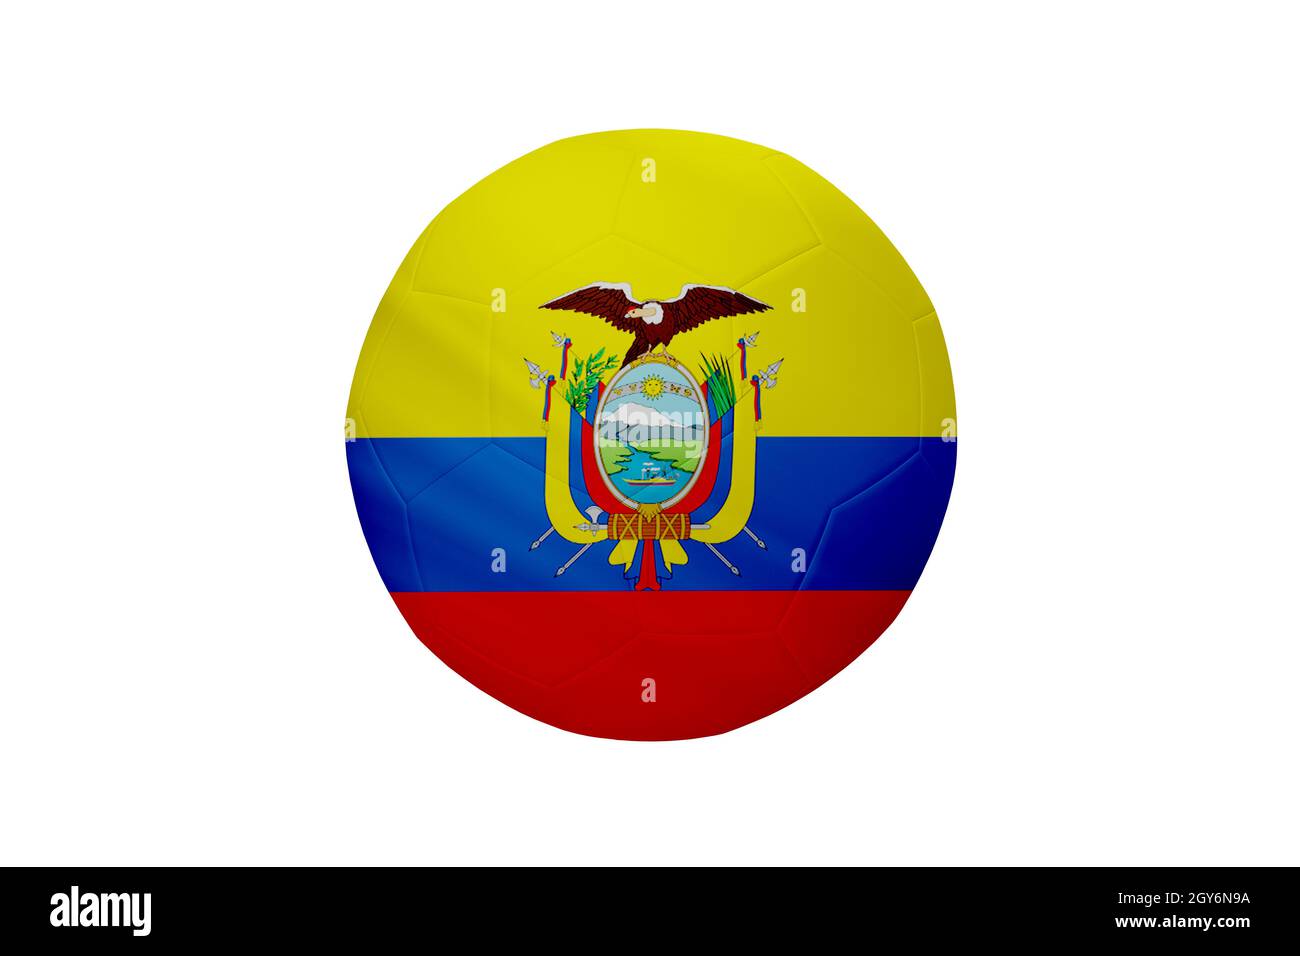 Fußball in den Farben der ecuadorianischen Flagge isoliert auf weißem Hintergrund. In einem konzeptionellen Meisterschaftsbild, das Ecuador unterstützt. Stockfoto